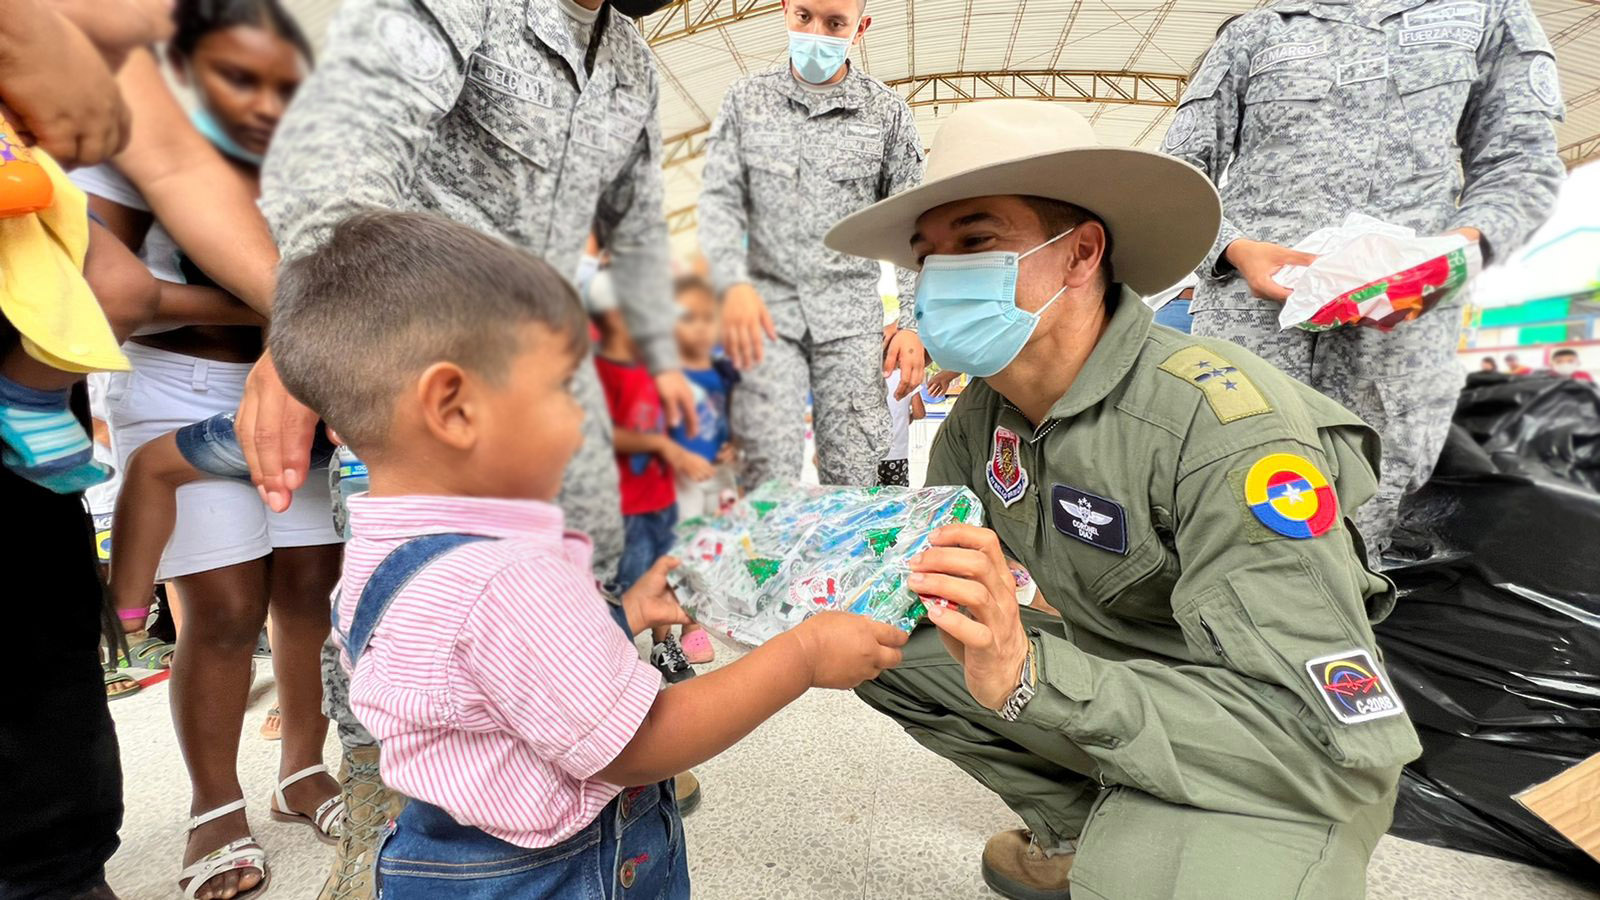 “Obsequia sonrisas” la campaña de su Fuerza Aérea que benefició a 12 mil niños colombianos